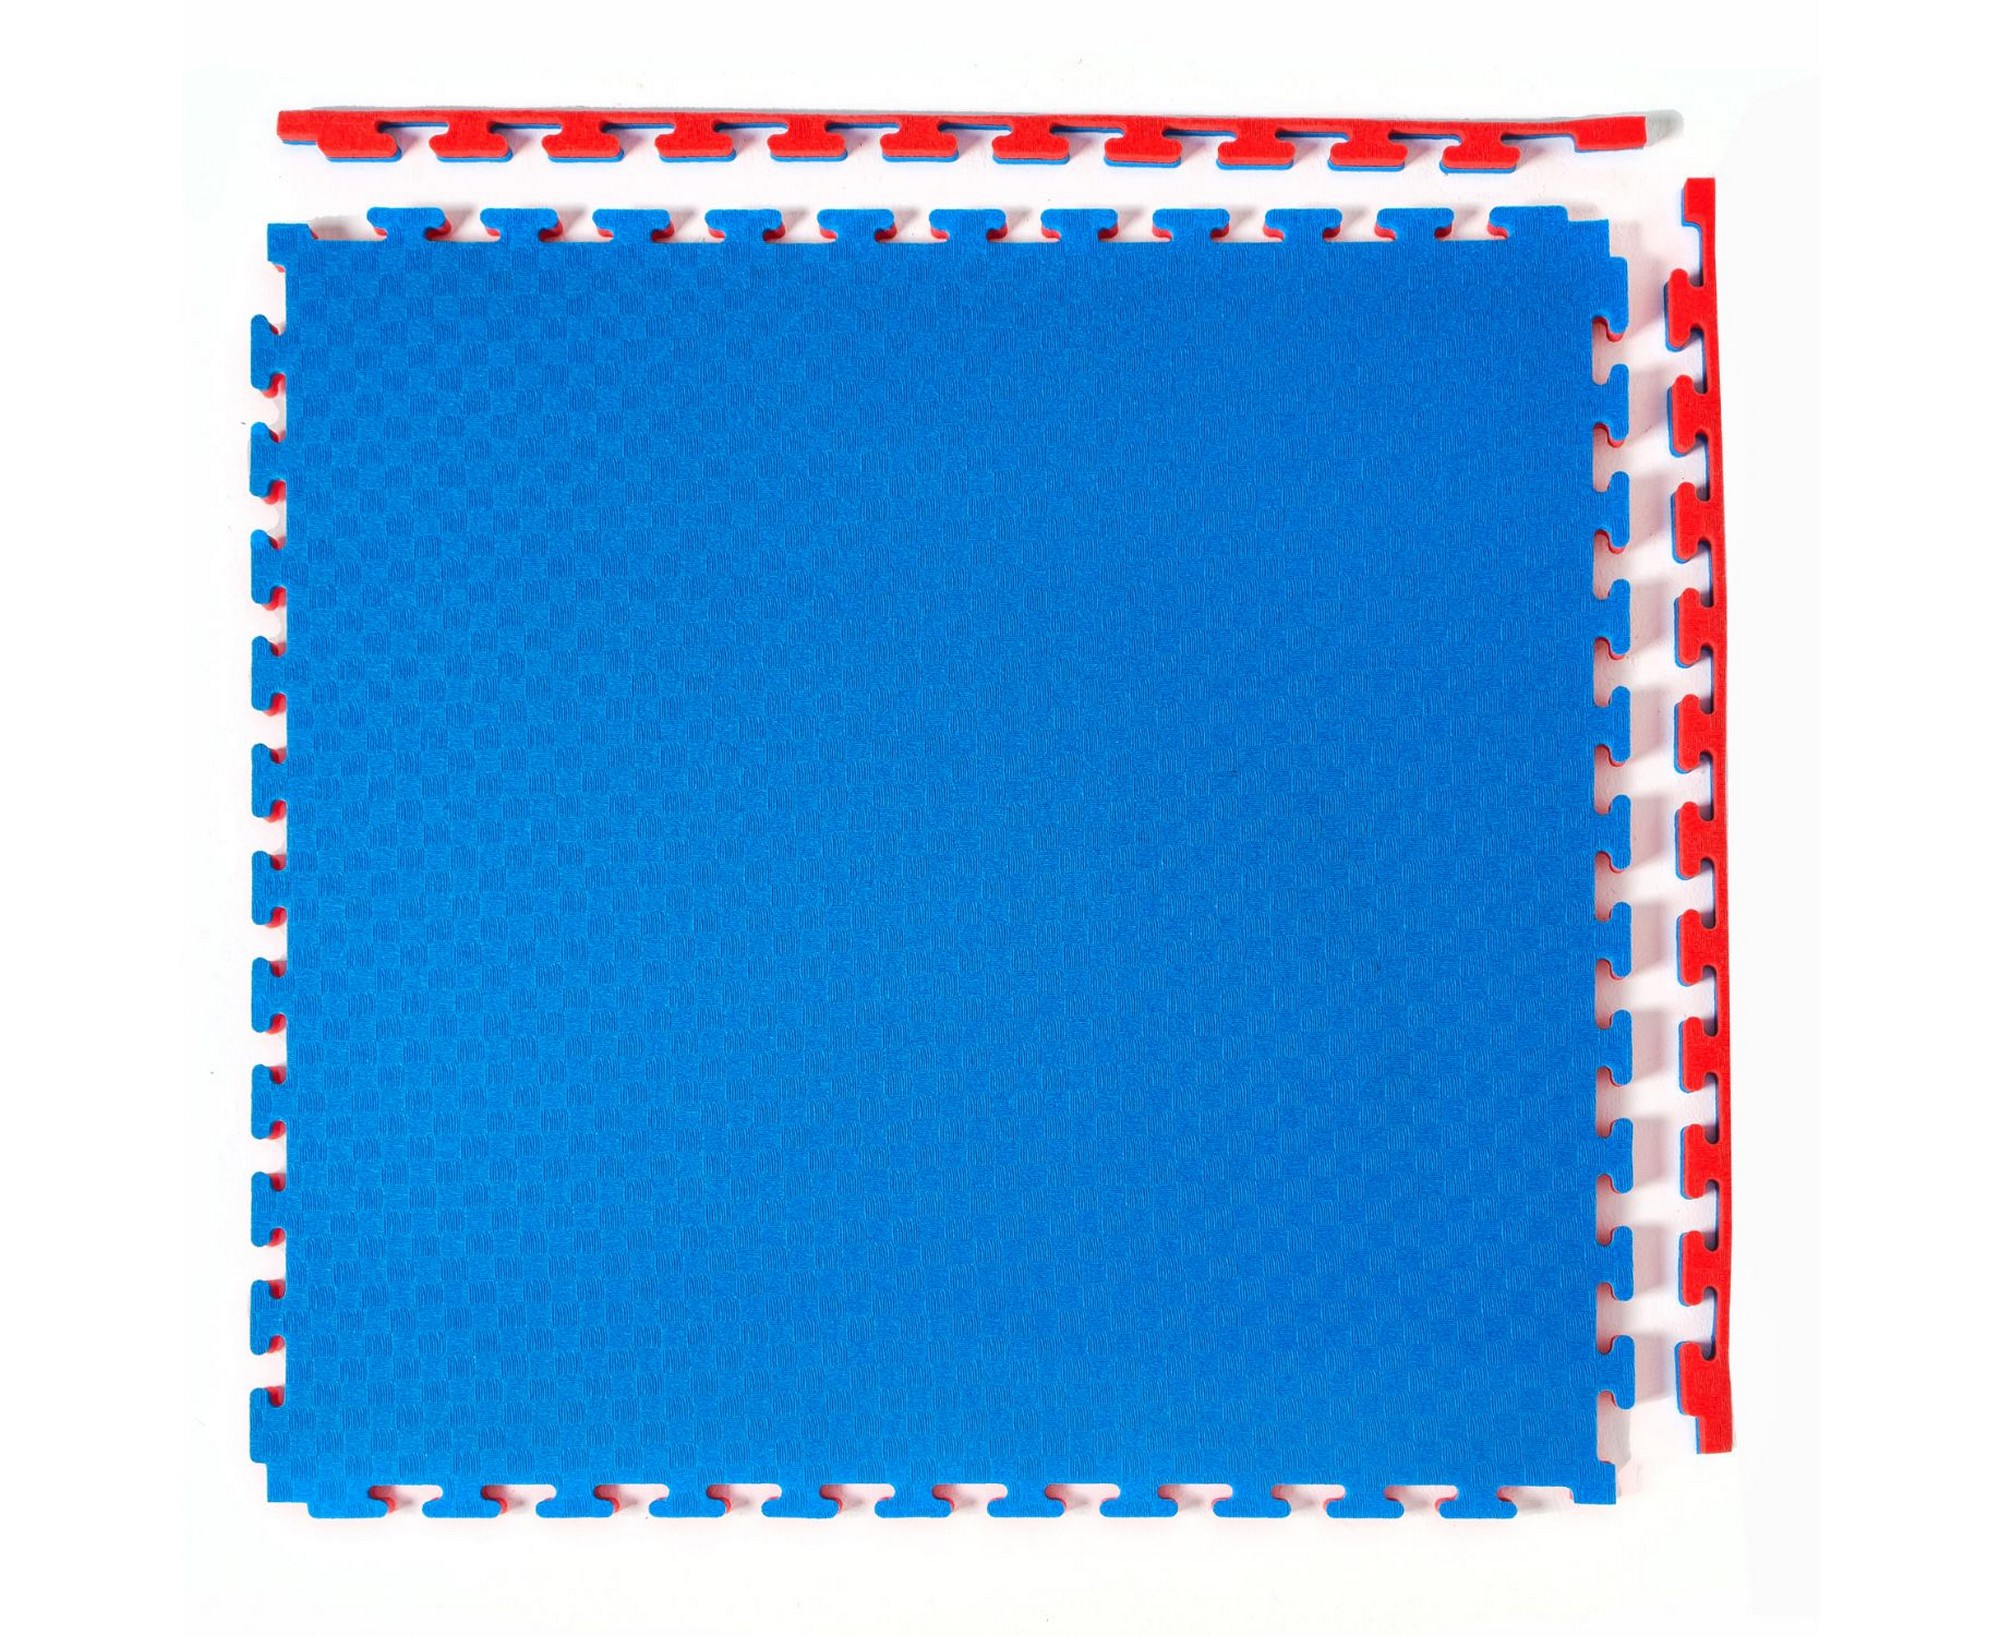 Будо-мат, 100x100 см, 40 мм DFC 12283 сине-красный